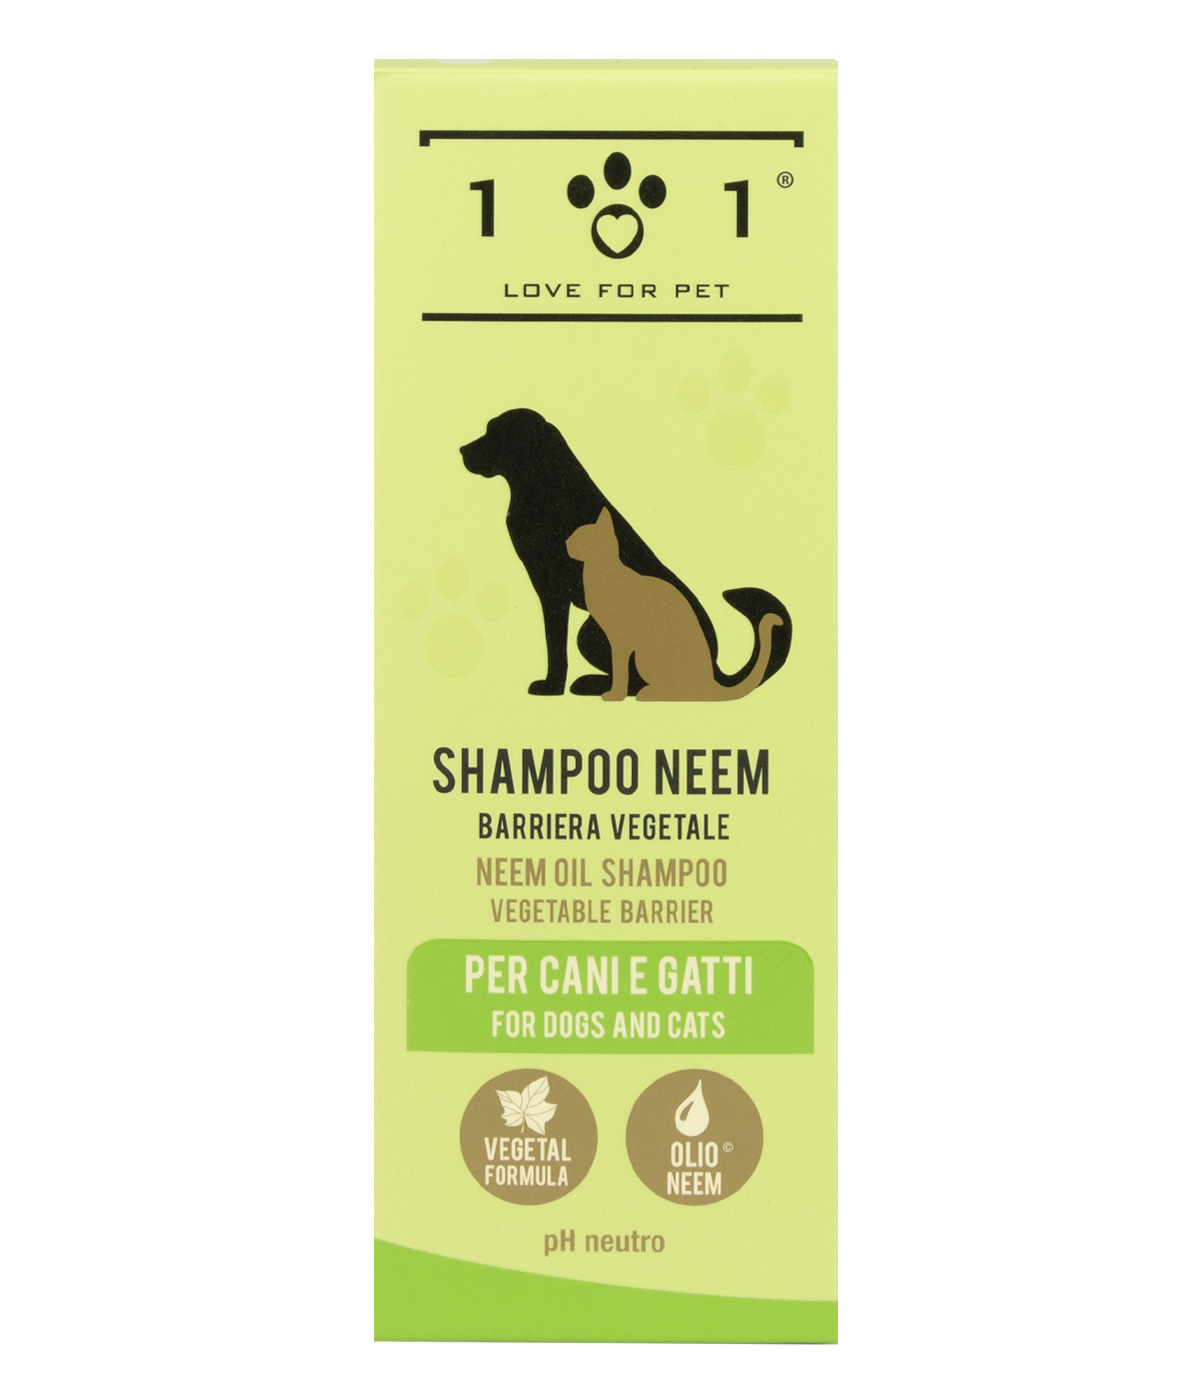 Shampoo repellente per cani e gatti